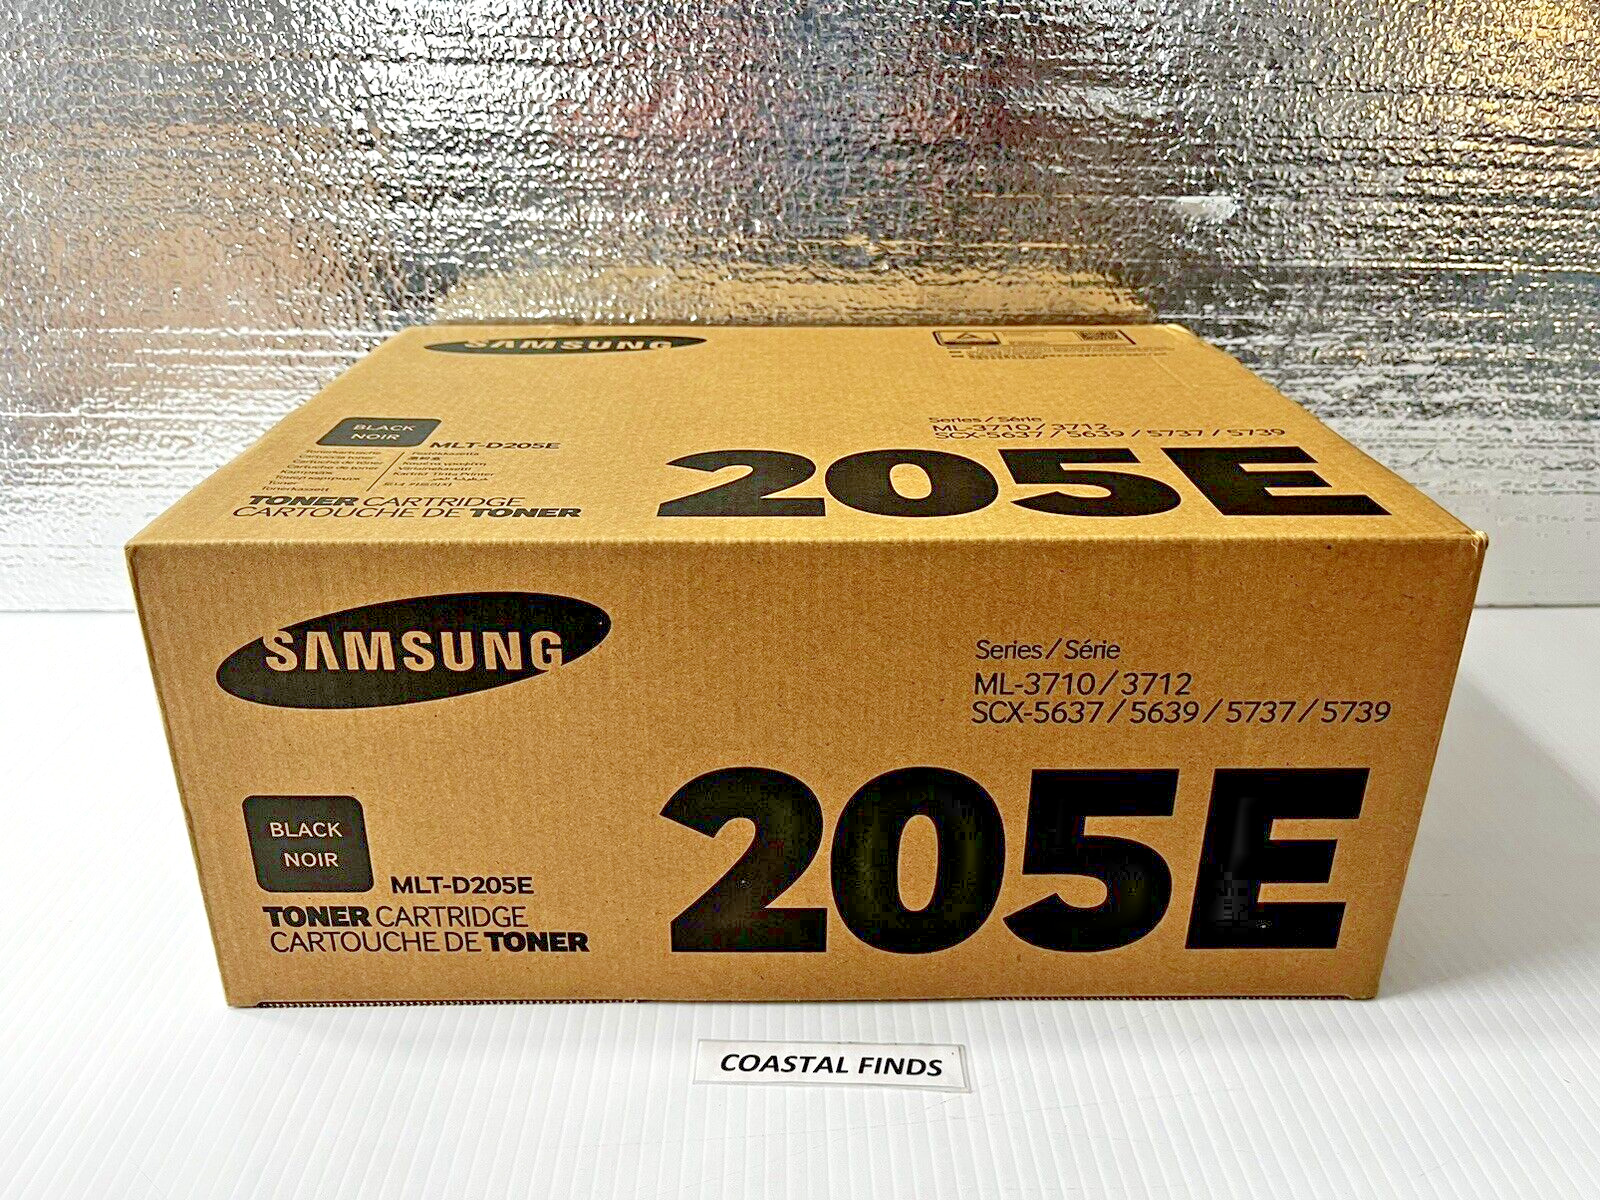 Samsung 205E Black Toner Cartridge OEM NEW Genuine Sealed MLT-D205E ML-3710